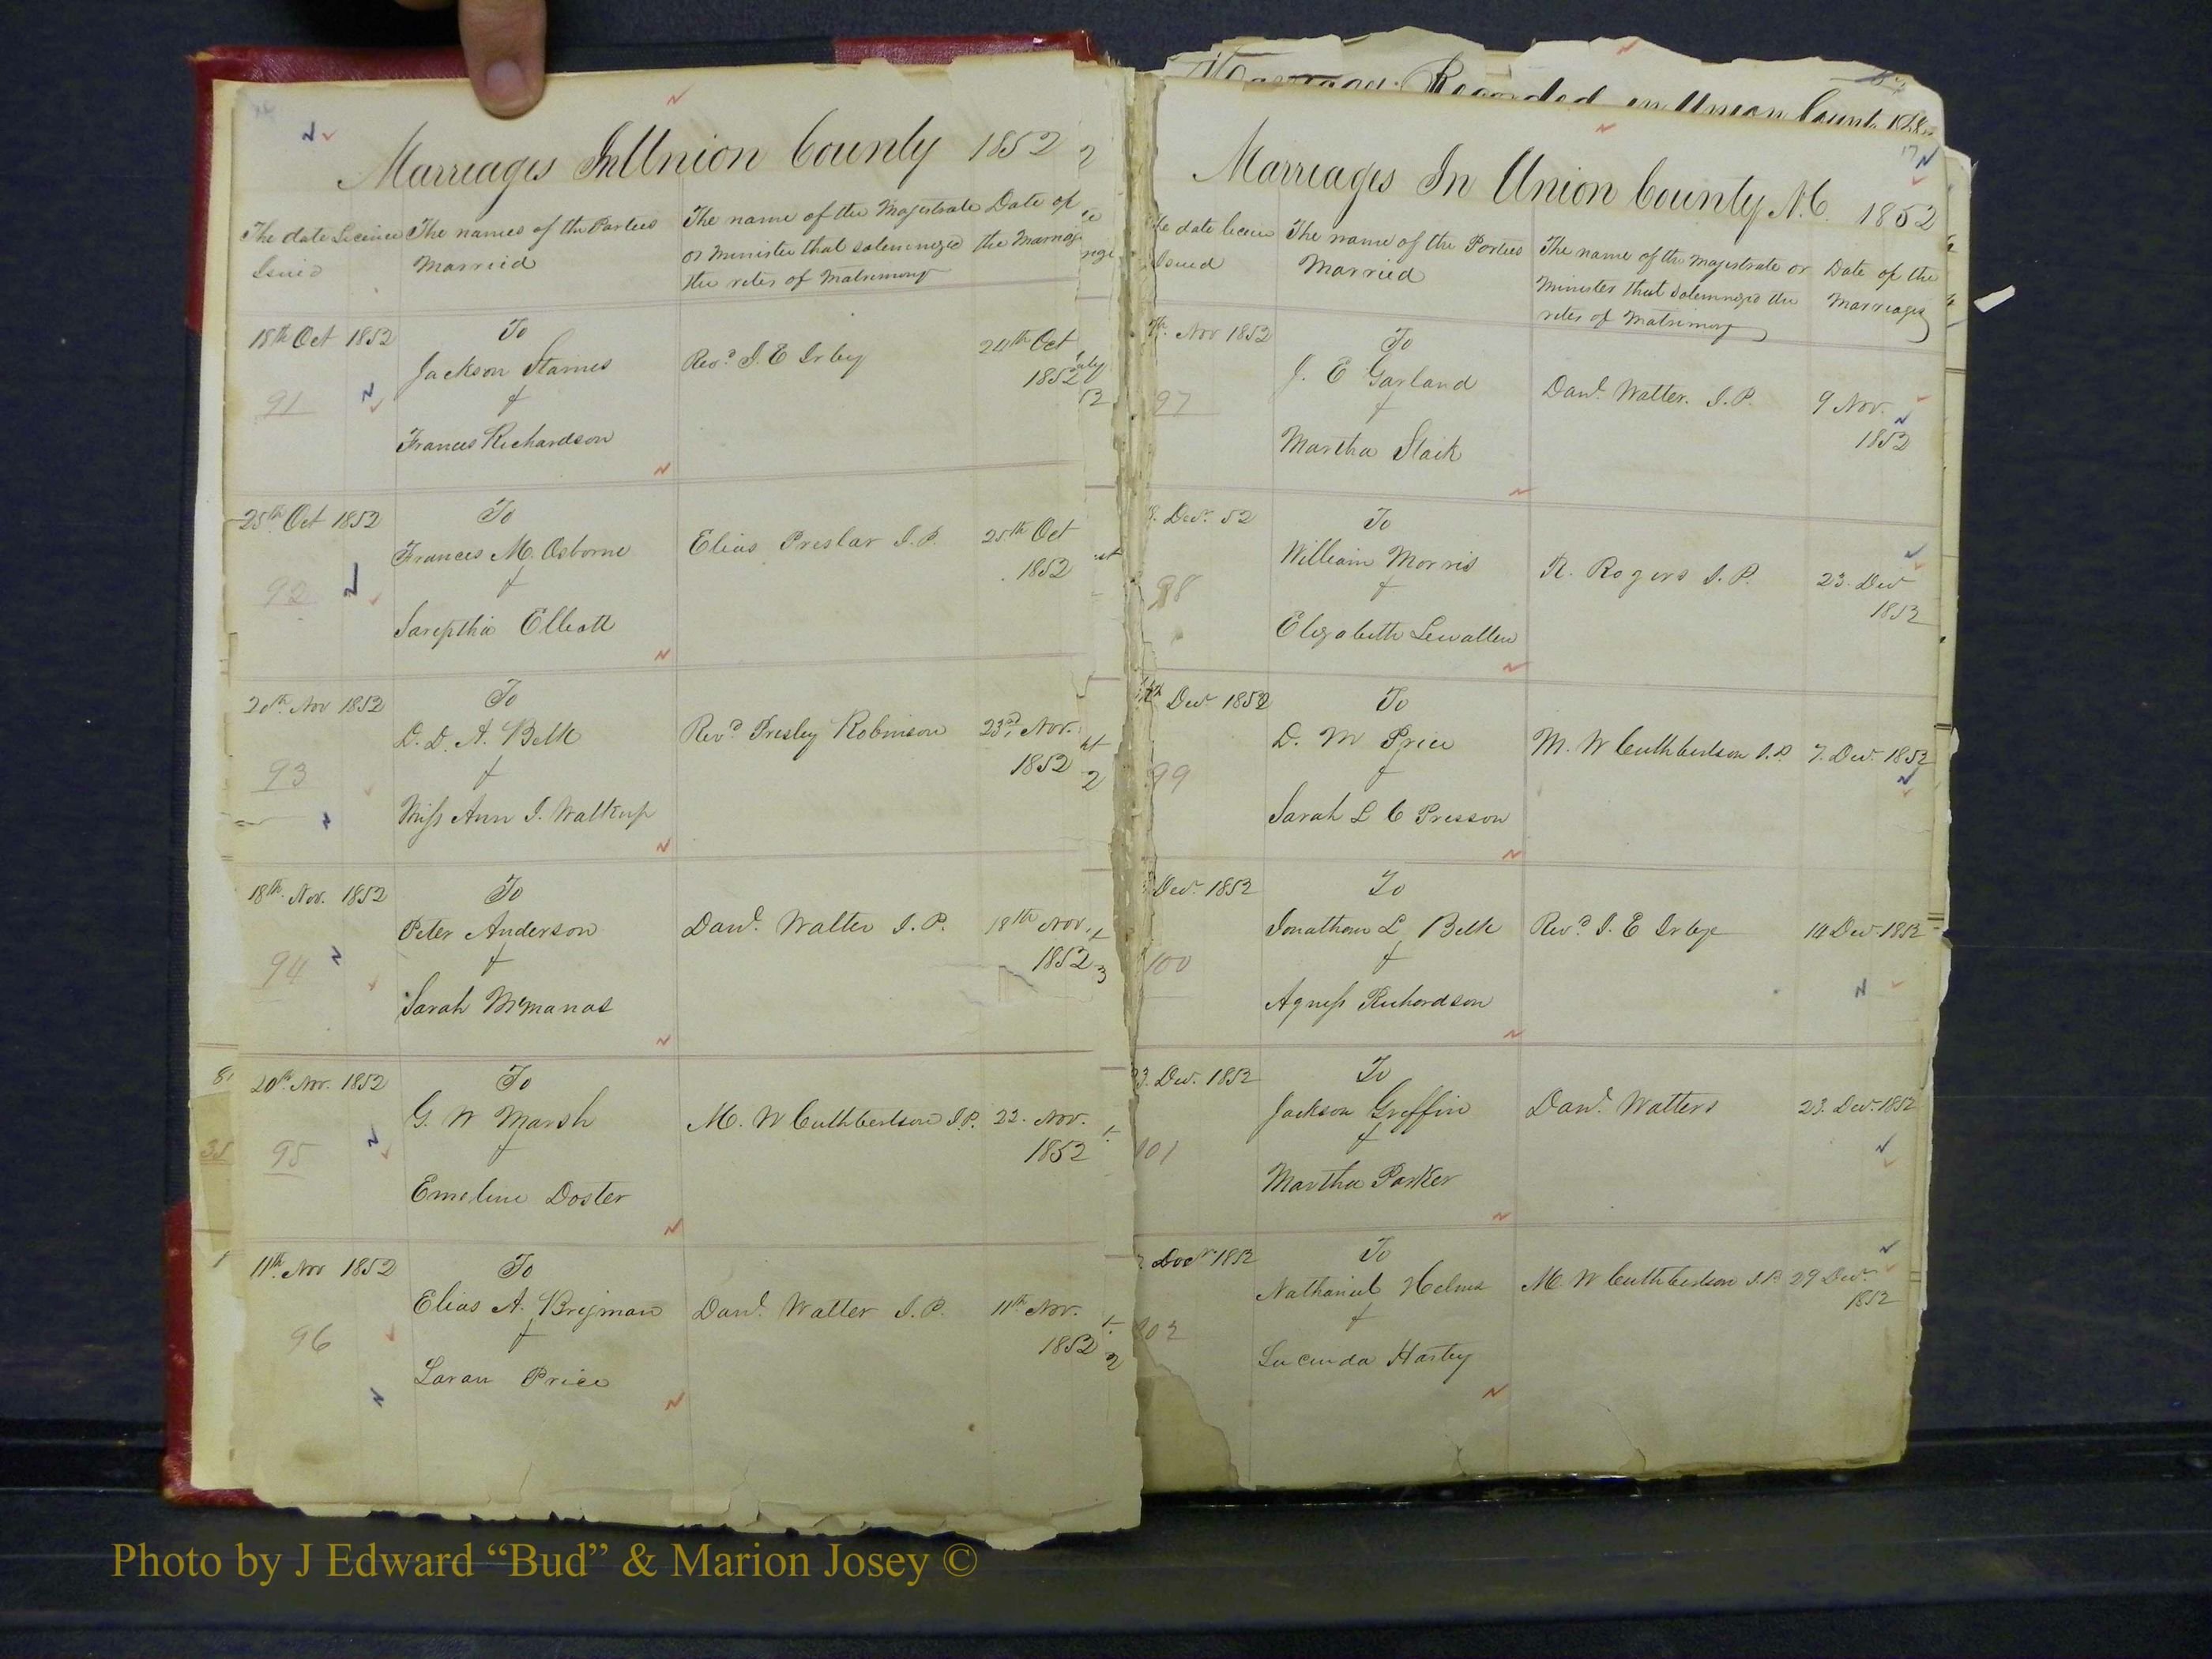 Union Co, NC Marriage Books 1, A-Z, 1851-1853 (10).JPG